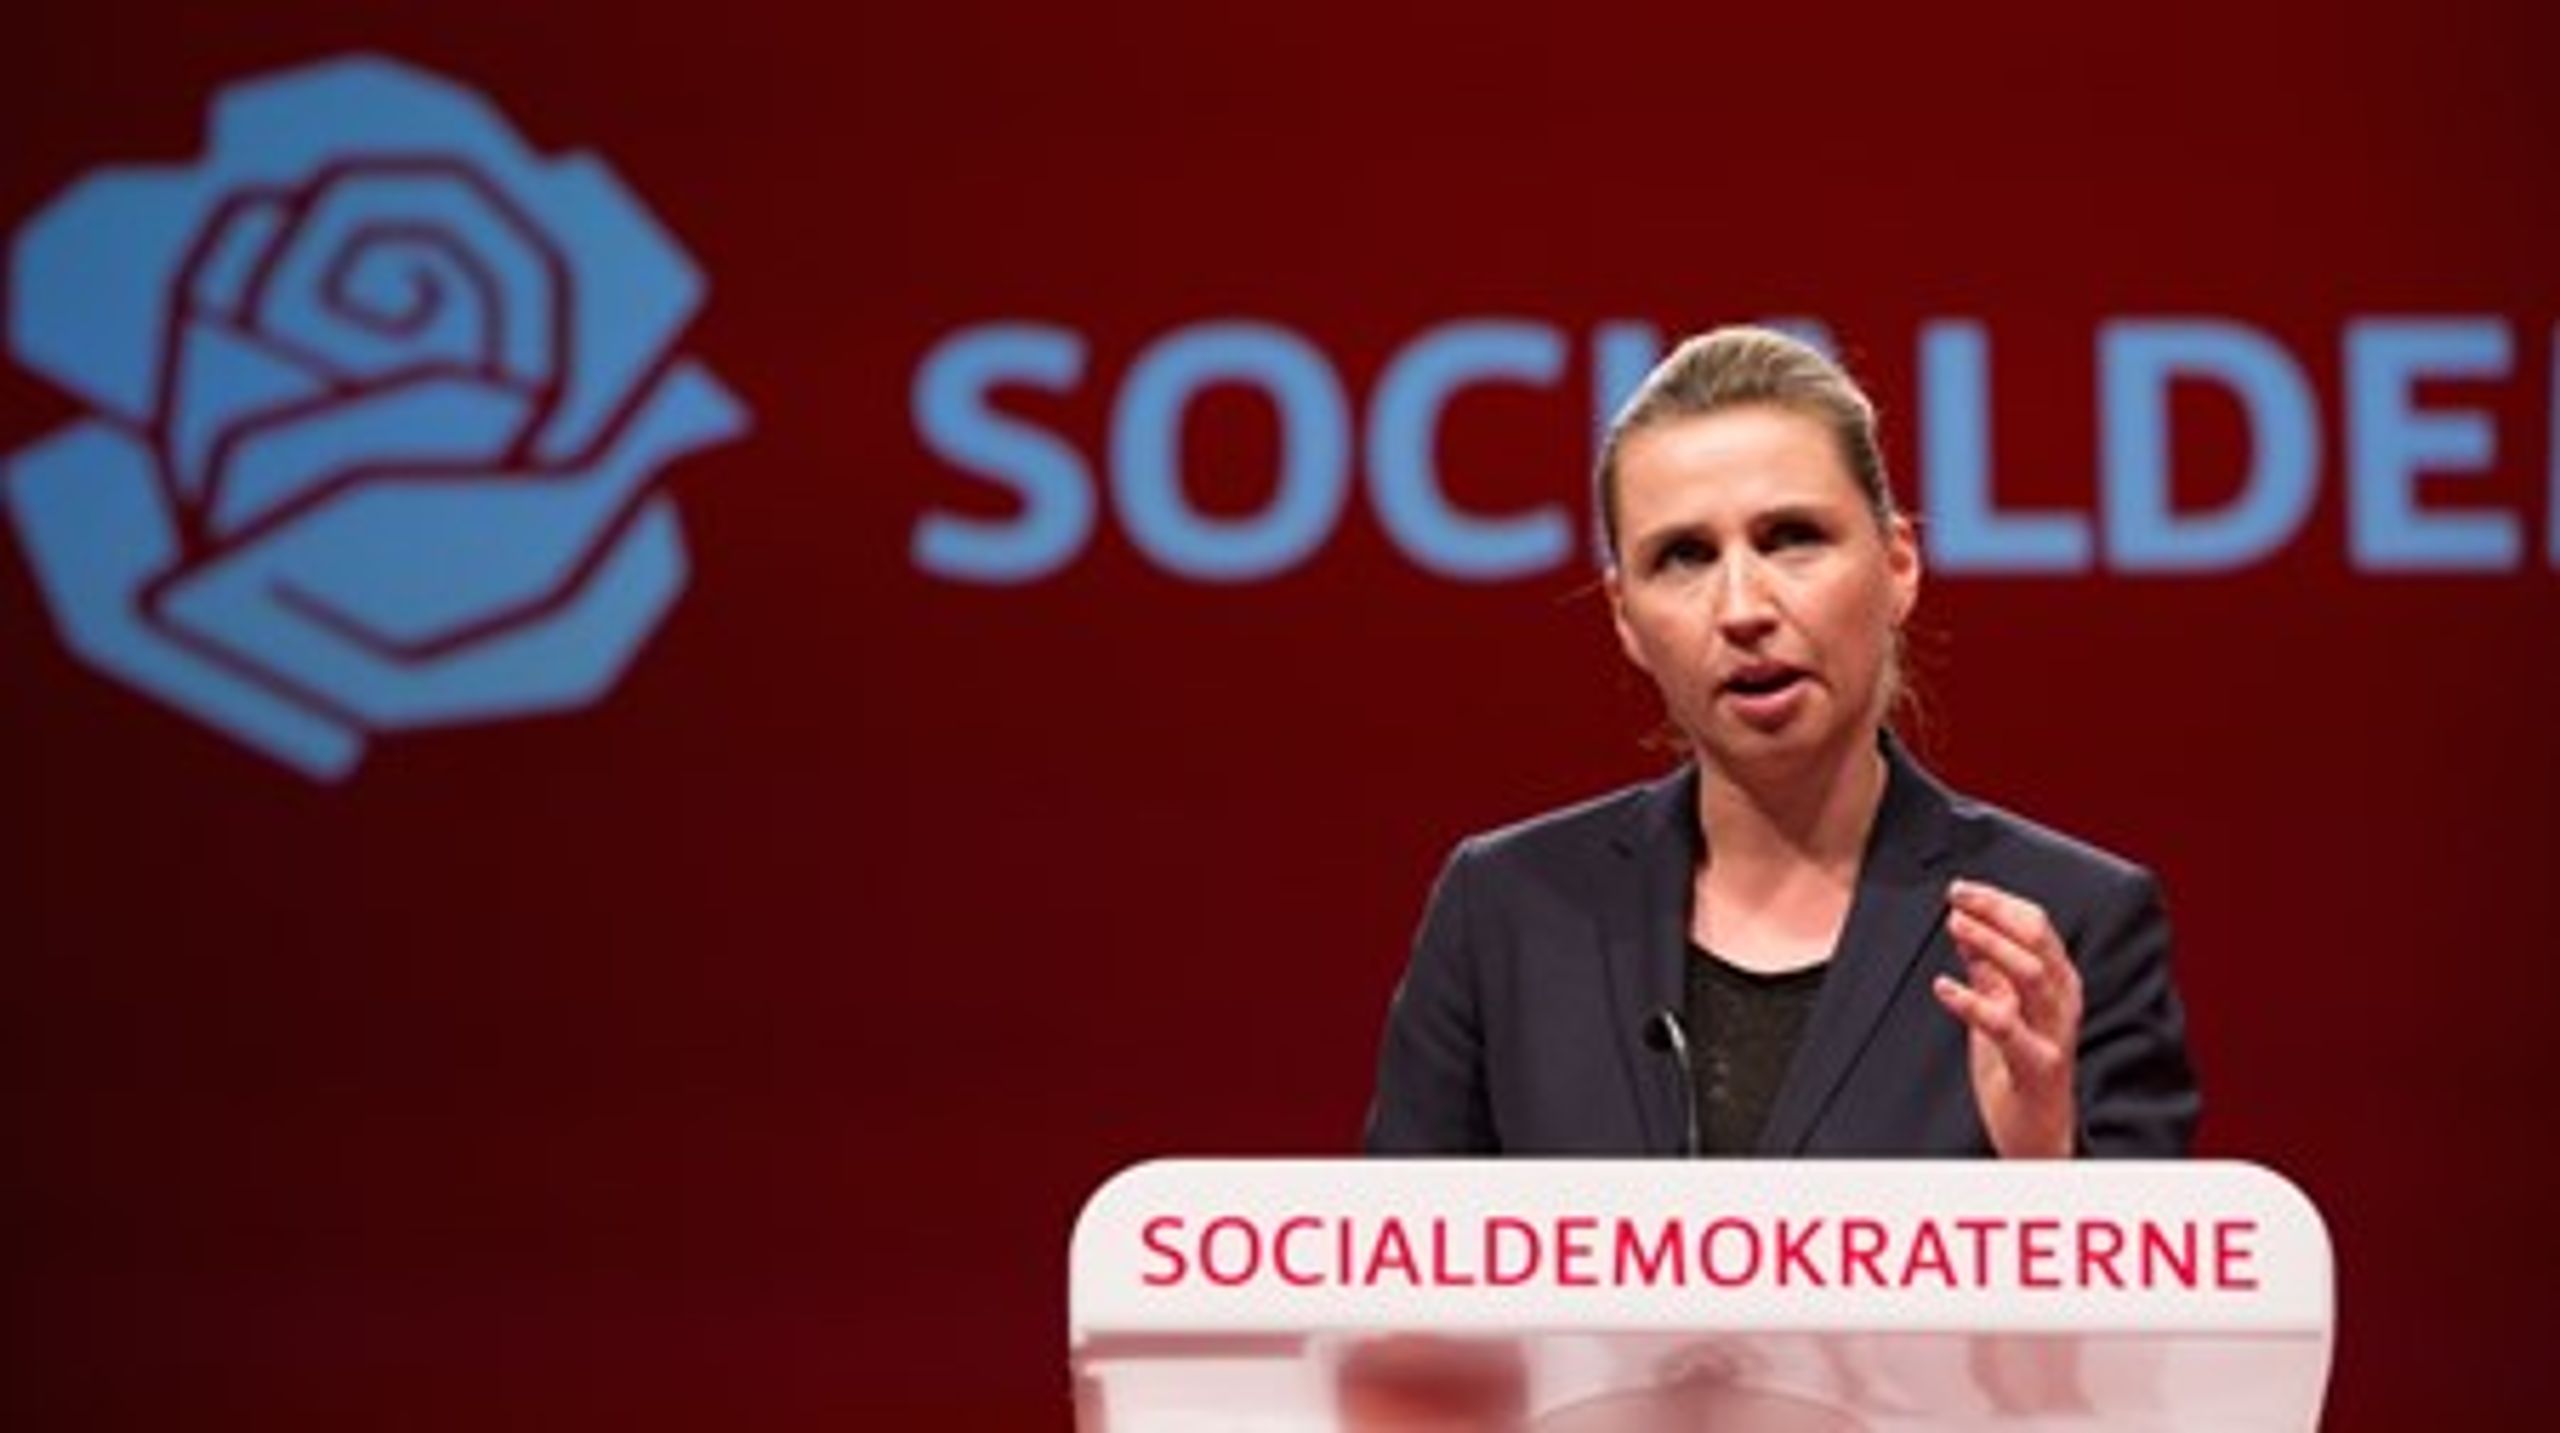 Socialdemokraterne holder i weekenden&nbsp;sin årlige kongres i Aalborg, og i år er det første gang med Mette Frederiksen i spidsen for partiet som ny formand.